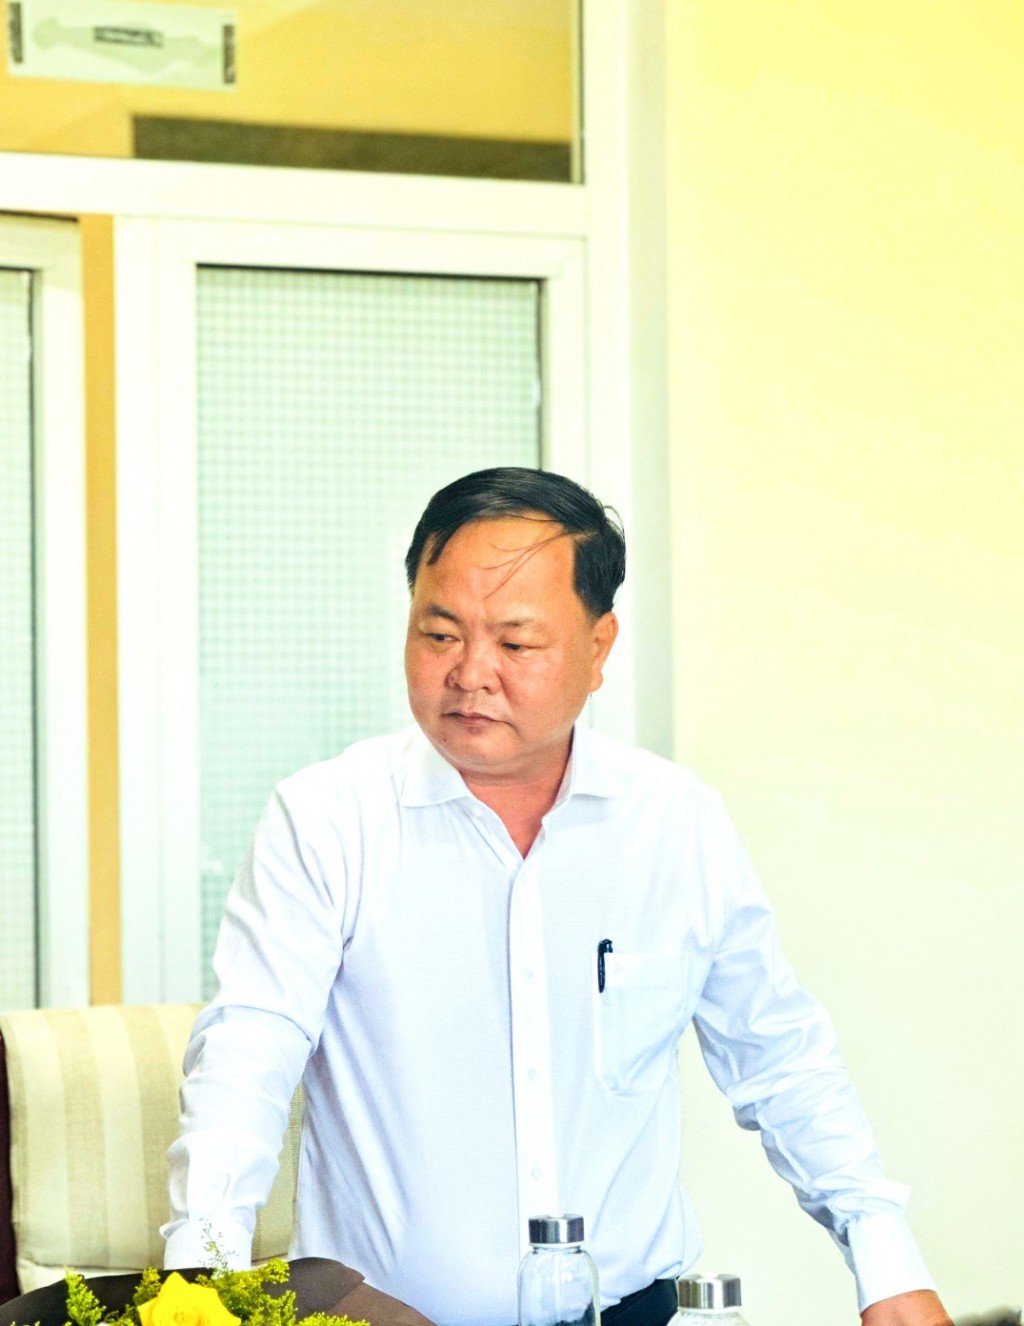 Ông Nguyễn Hồng Quang được điều động và bổ nhiệm giữ chức Trưởng Ban quản lý các khu kinh tế và khu công nghiệp tỉnh Quảng Nam trong thời hạn 5 năm, kể từ ngày 17/6. (Ảnh: sonoivu.quangnam.gov.vn)